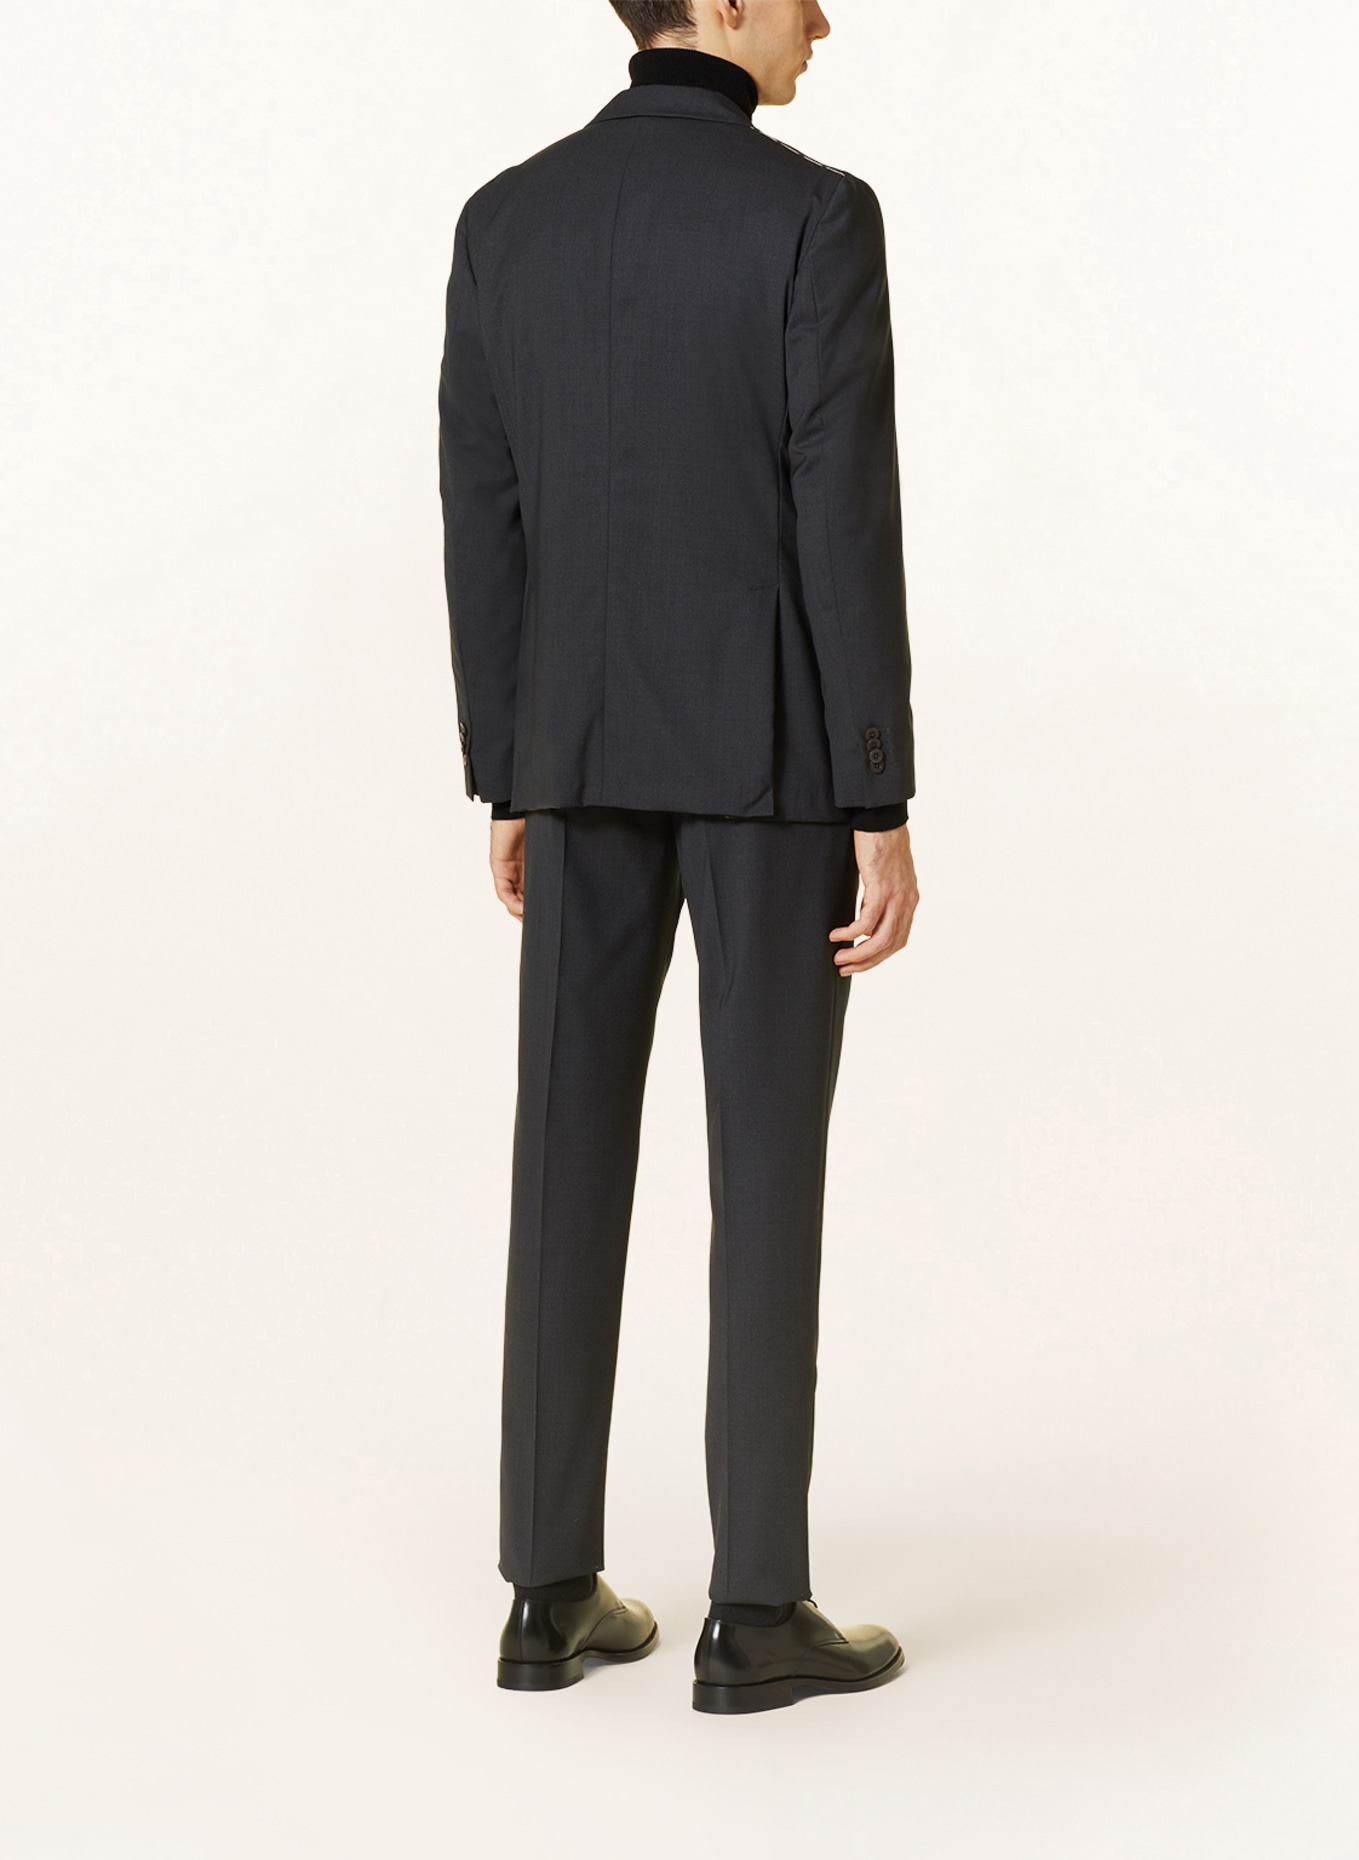 BOGLIOLI Suit jacket extra slim fit, Color: 890 Anthra (Image 3)